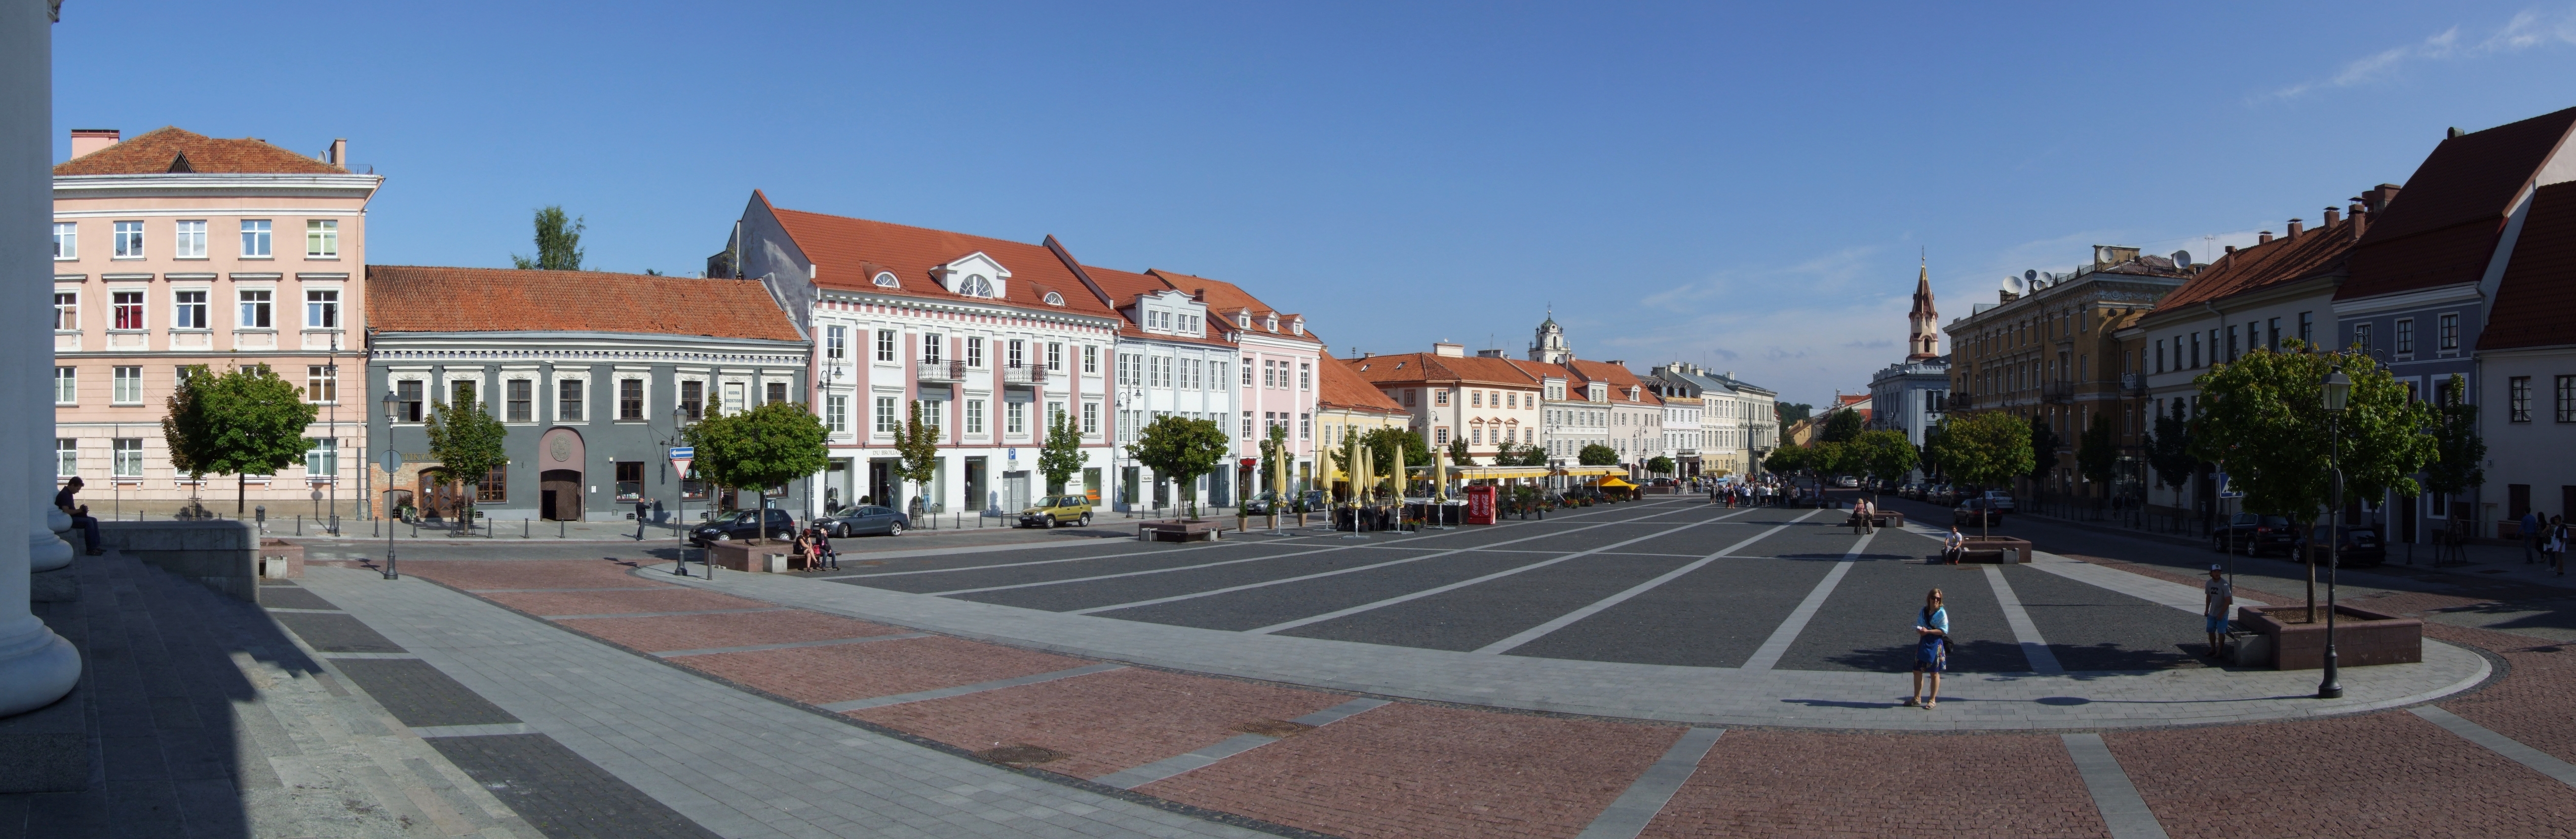 Vilnius_(Wilno)_-_city_hall_square_(Rotušės_aikštė)